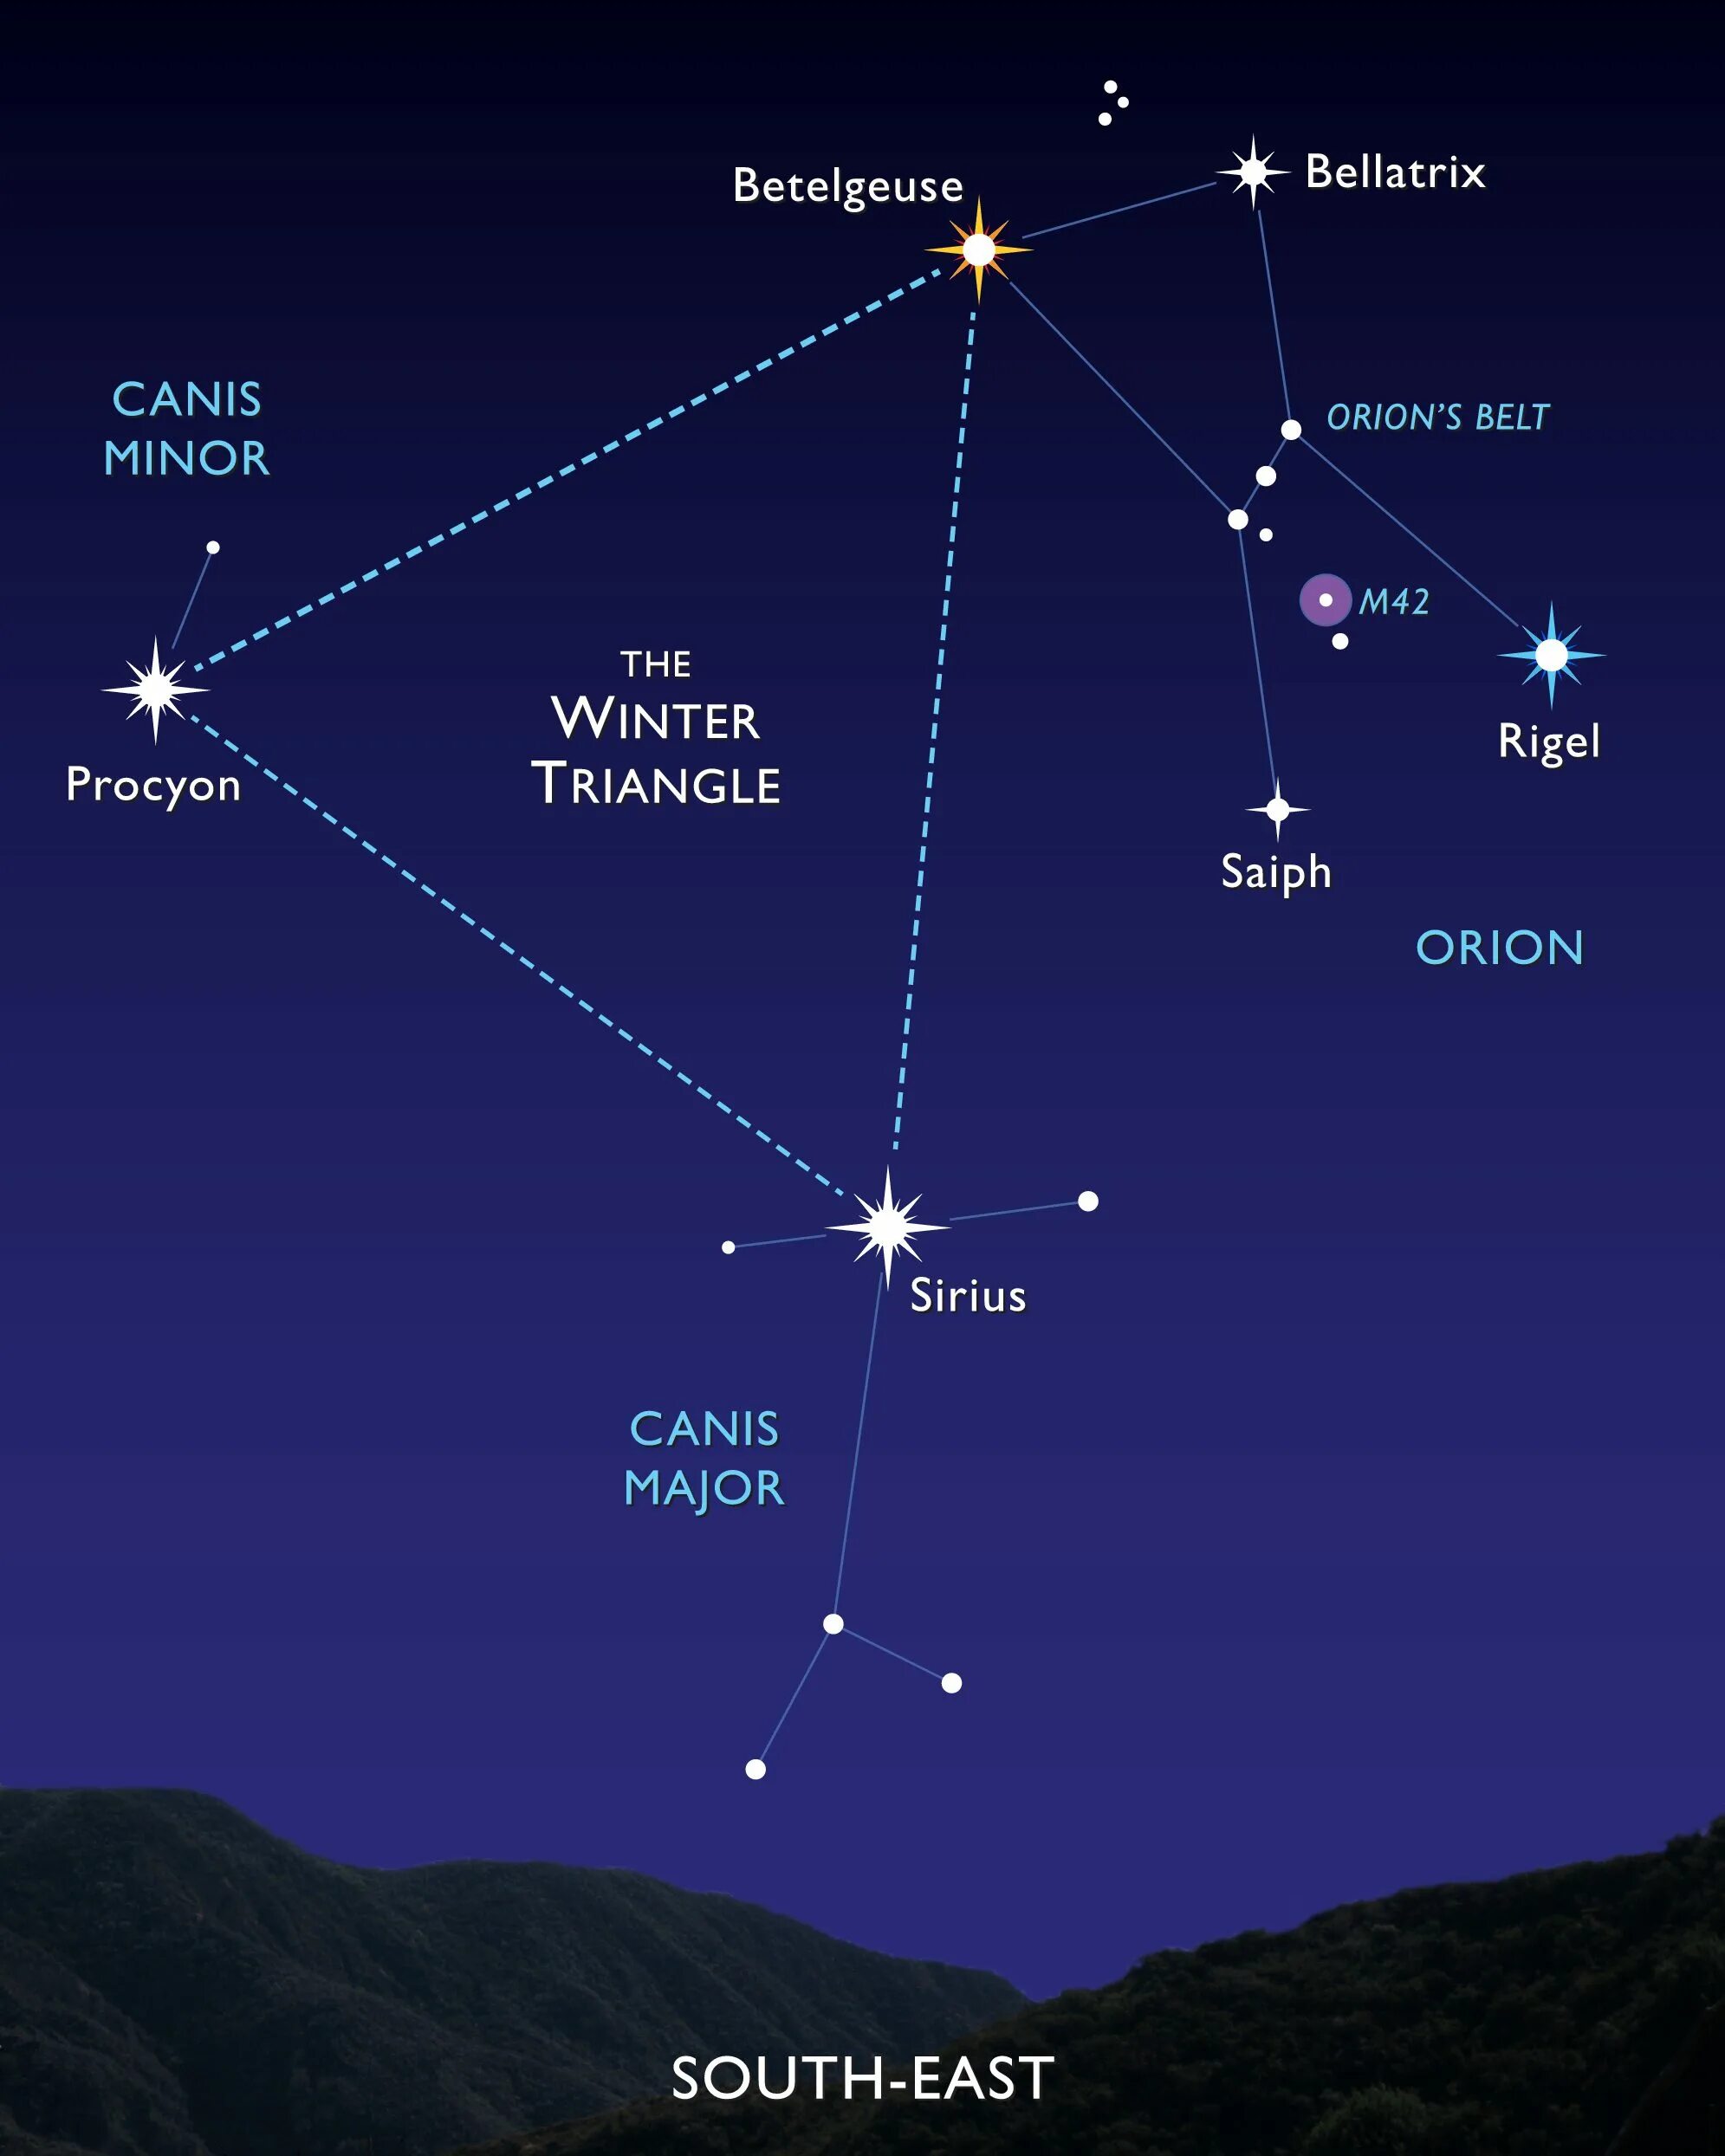 Звезда Бетельгейзе в созвездии Ориона. Созвездие Орион и Сириус и Процион. Пояс Ориона Созвездие Бетельгейзе. Зимний треугольник: Сириус, Процион, Бетельгейзе. Какая звезда относится к какому созвездию